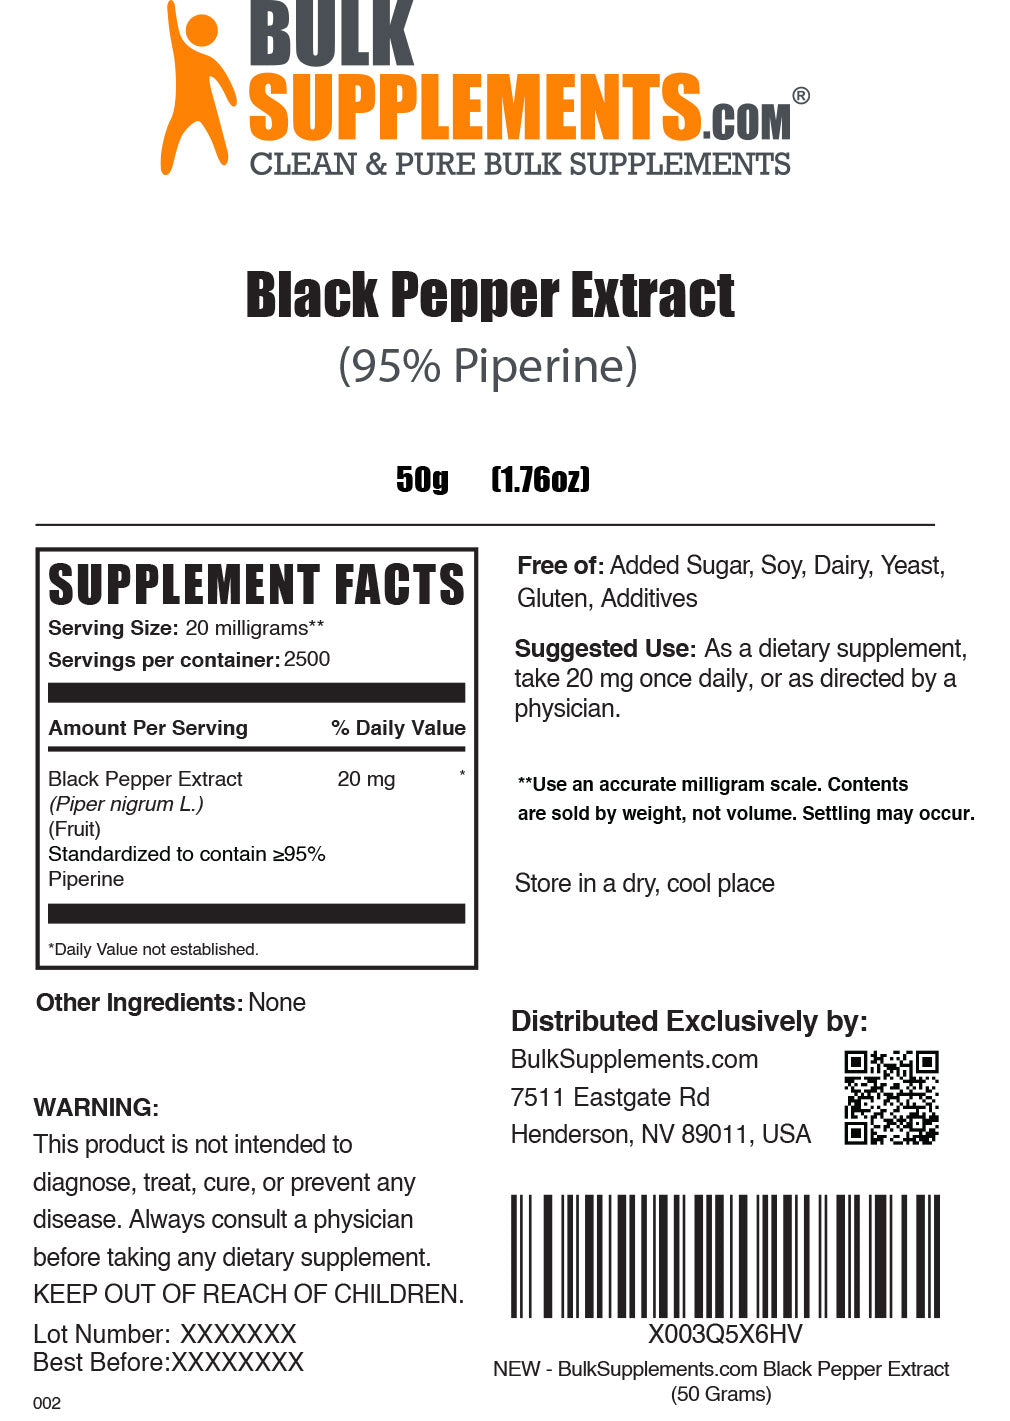 Порошок екстракту чорного перцю (95% піперину).